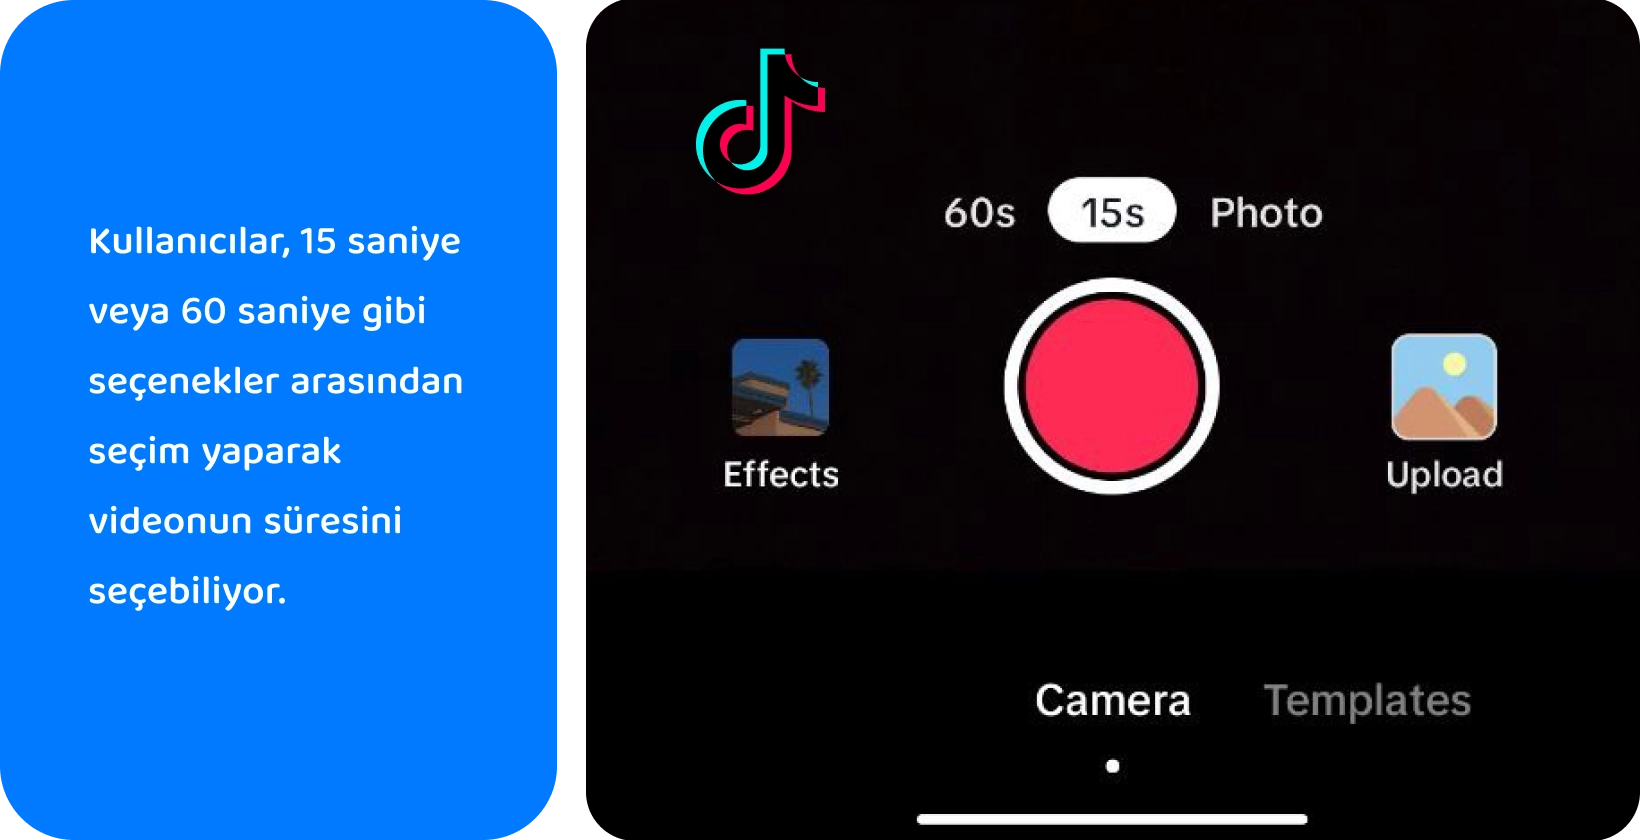 TikTok'nin yaratıcı video yapımı için ses ekleme, kamerayı çevirme, filtre uygulama, zamanlayıcı kullanma ve daha fazlasını içeren kayıt arayüzü.
